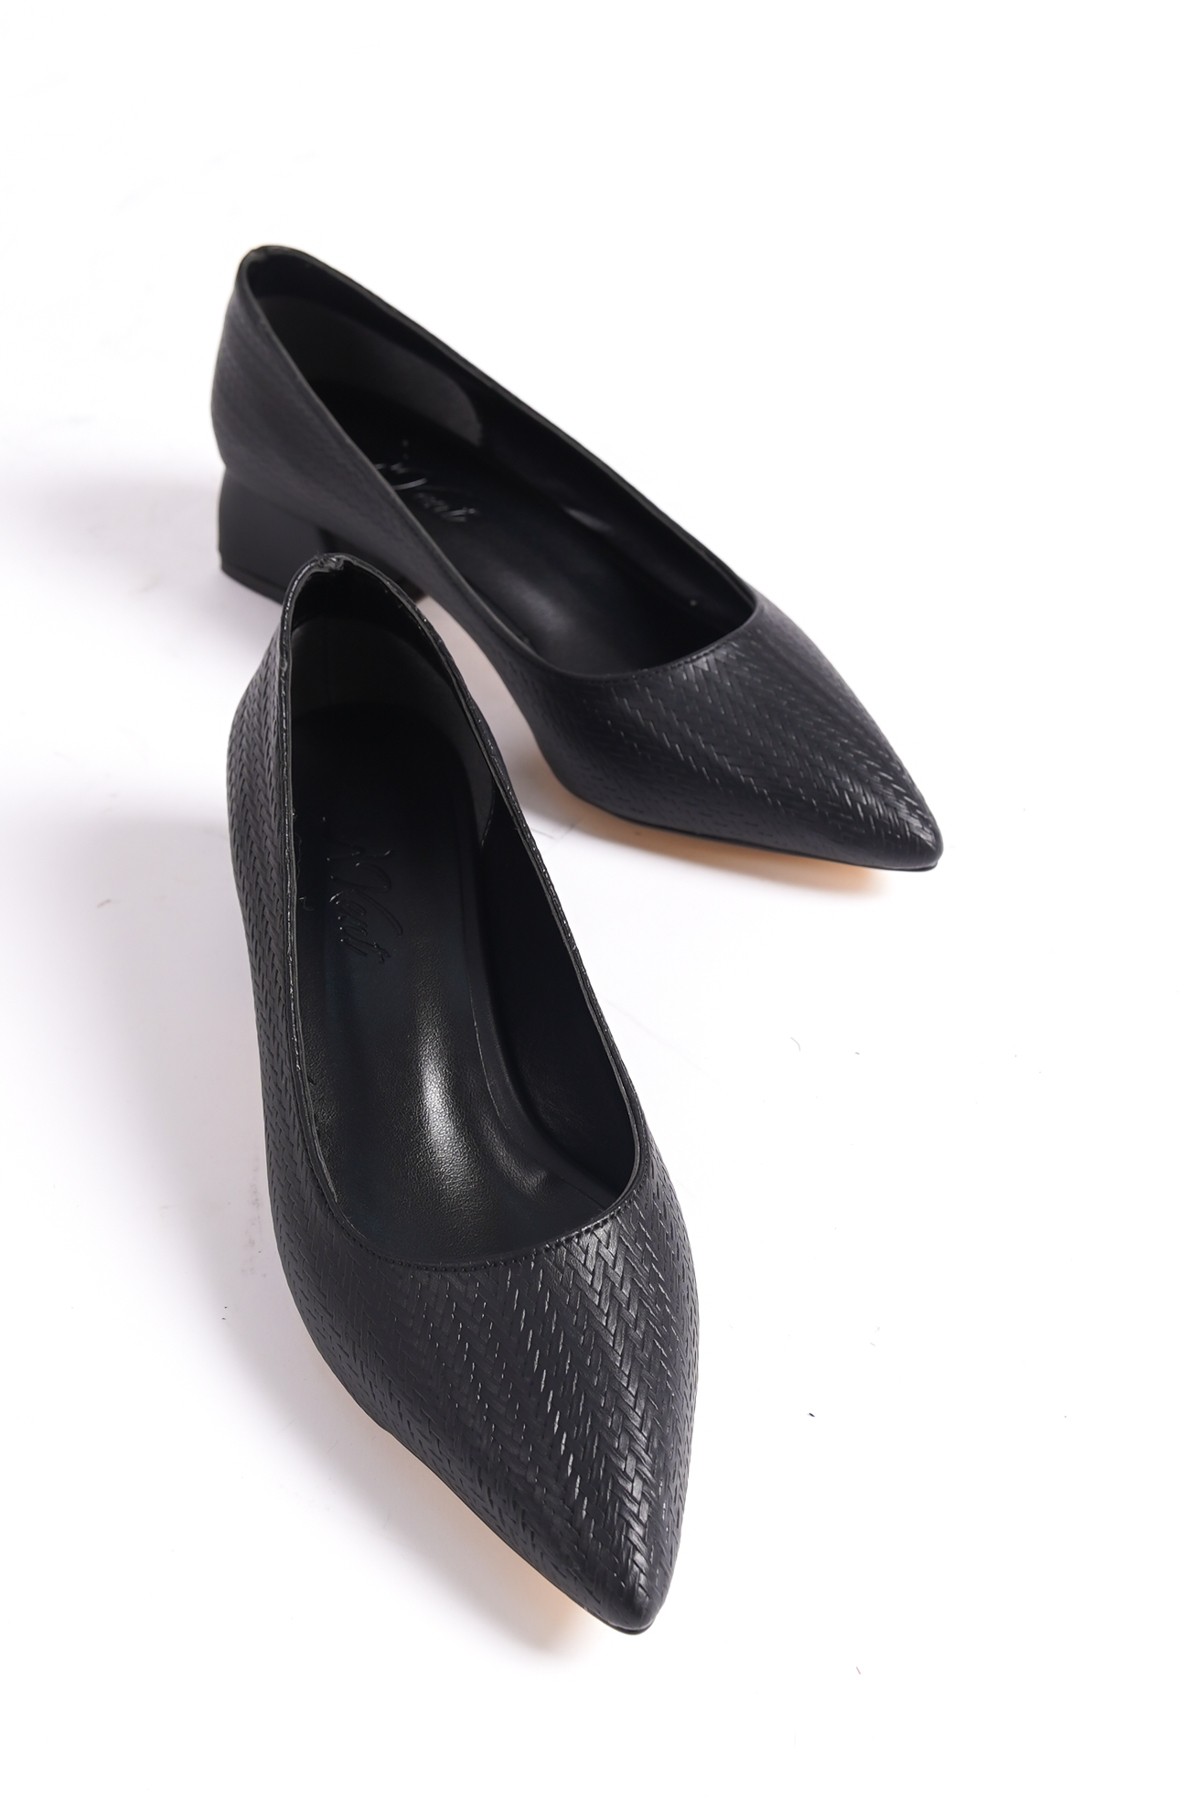 Corunna Kadın Alçak Topuklu Baskılı Cilt Desenli Topuklu Ayakkabı